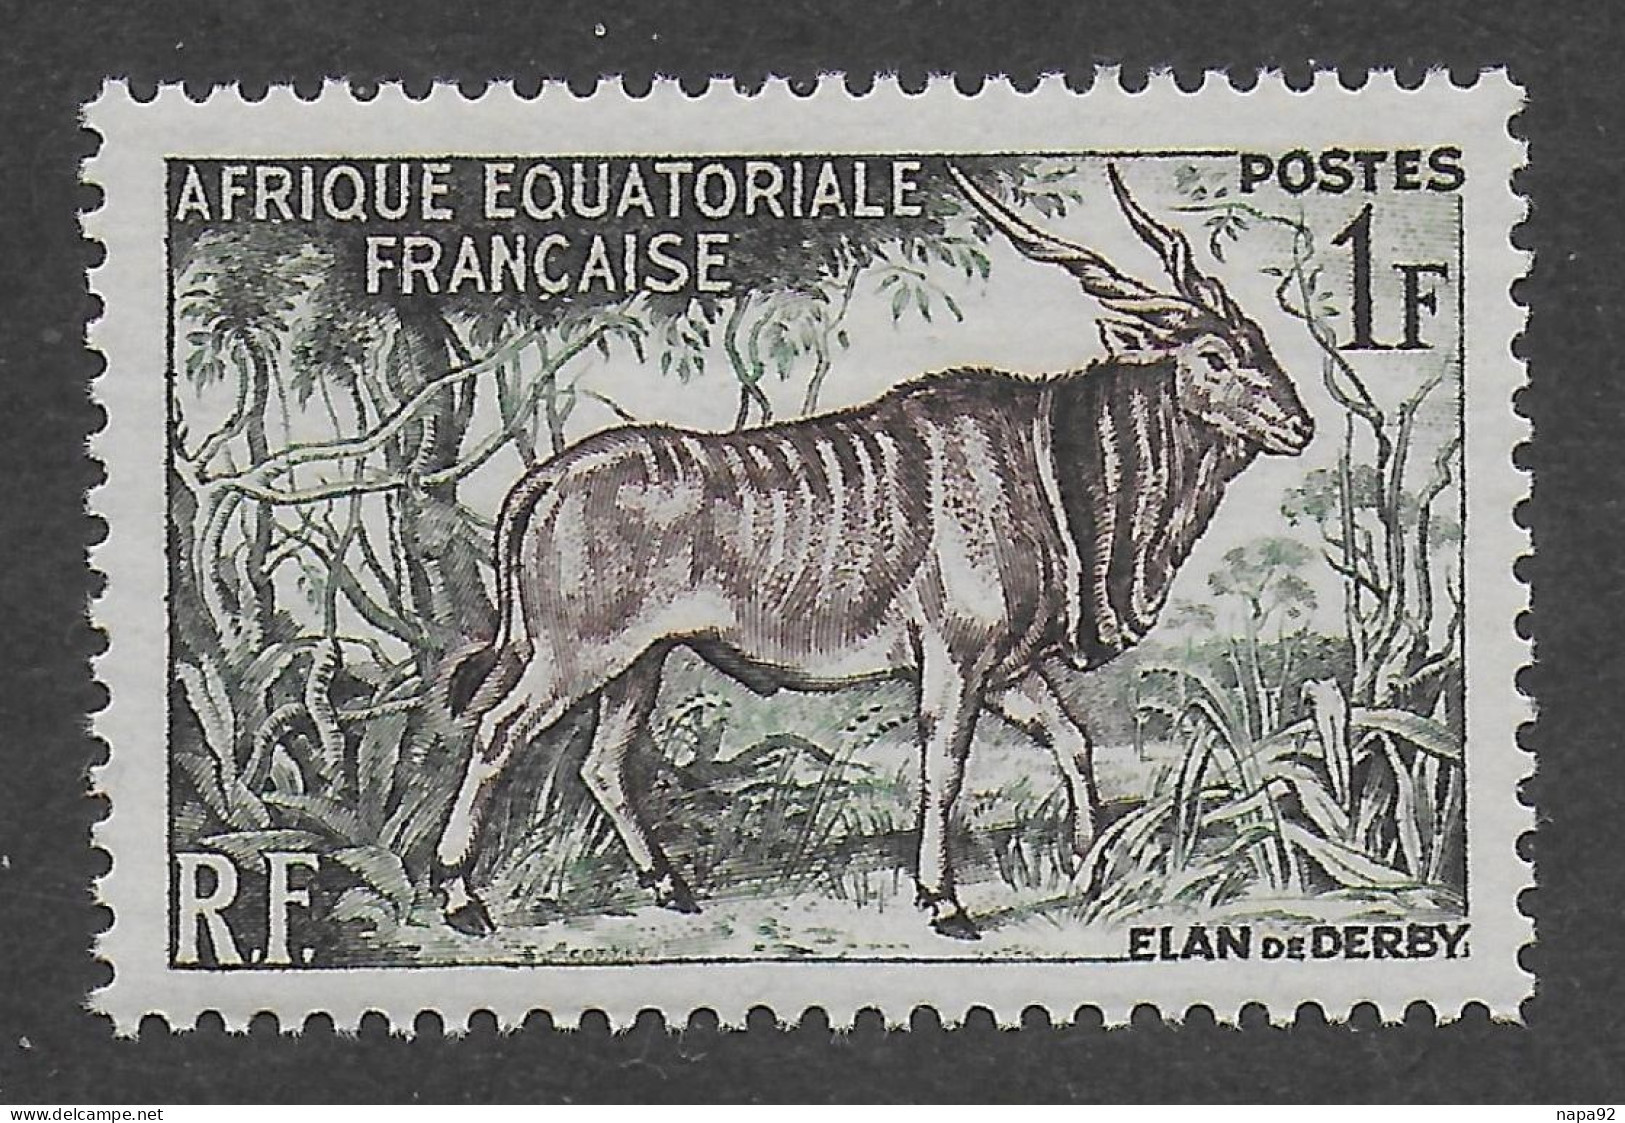 AFRIQUE EQUATORIALE FRANCAISE - AEF - A.E.F. - 1957 - YT 238** - MNH - Neufs